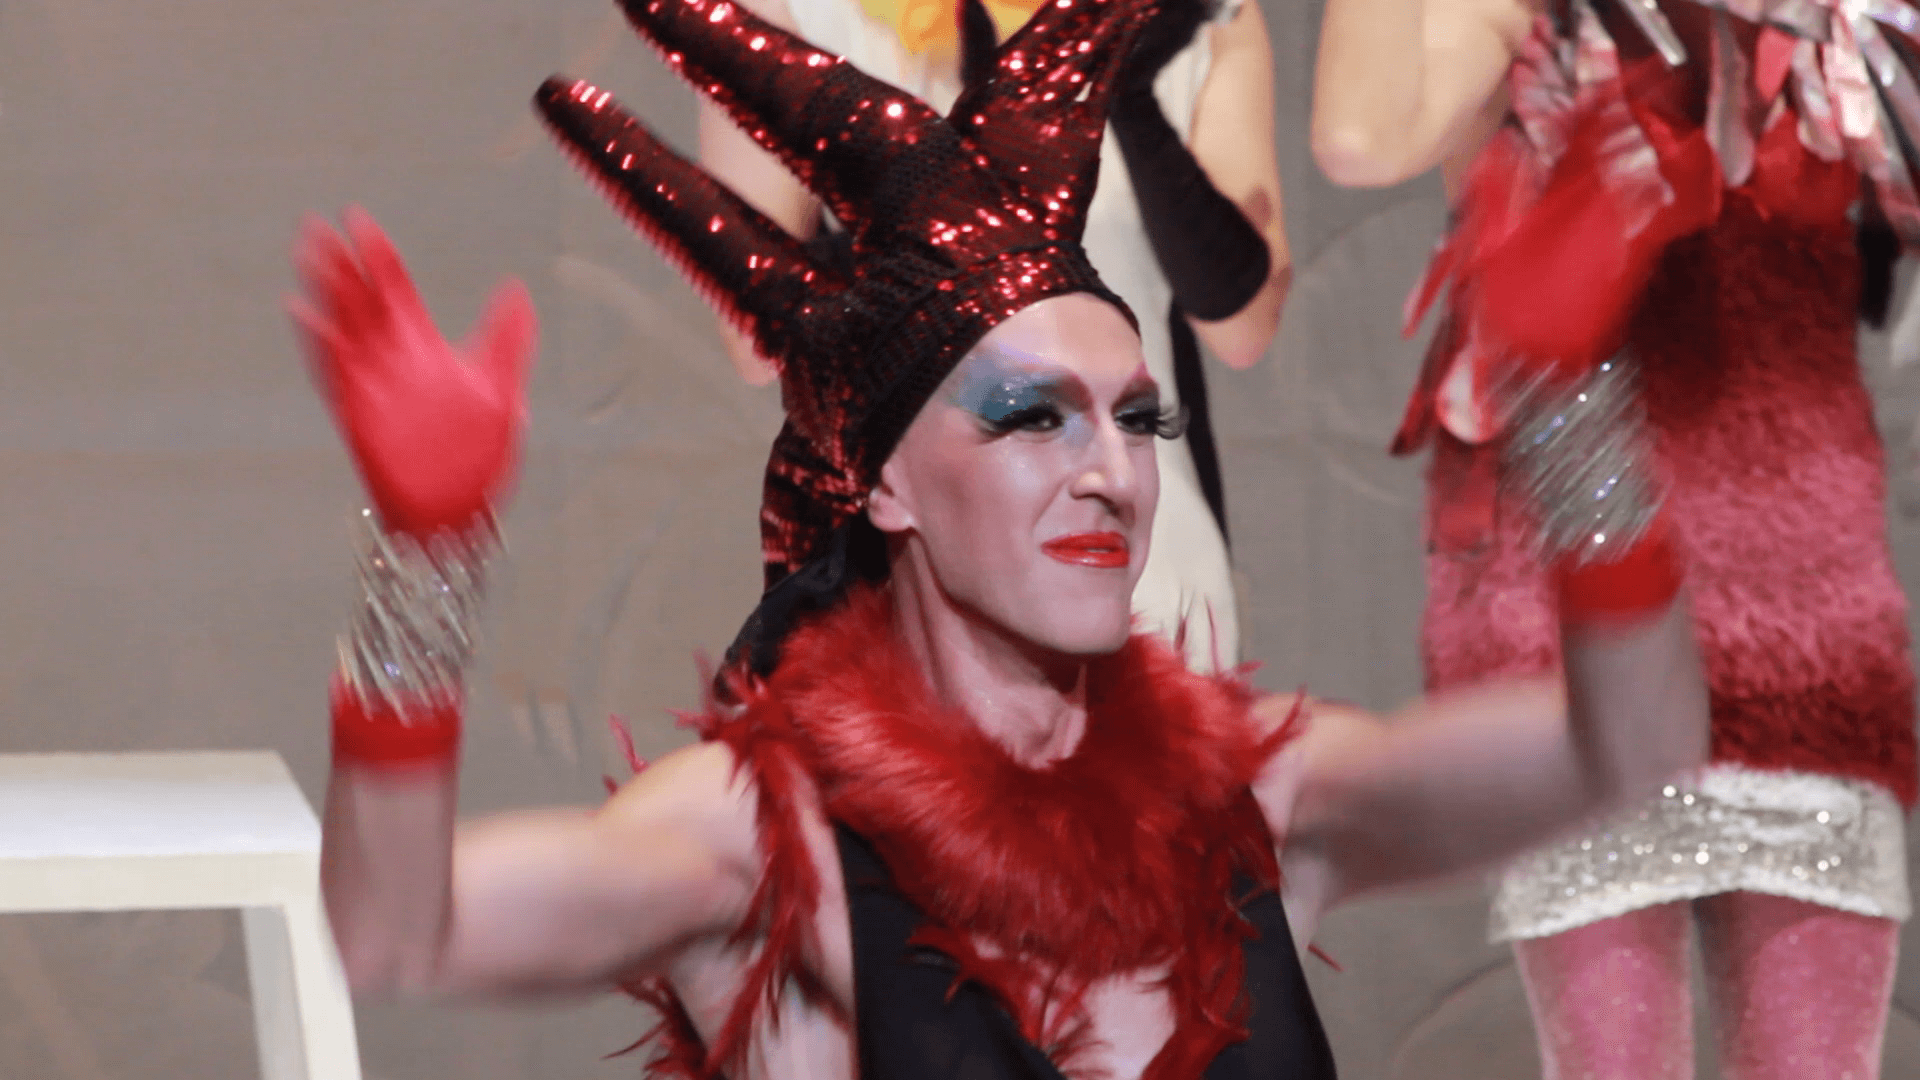 Essere Divina, il laboratorio drag aperto a uomini e donne - Essere Divina 3 - Gay.it